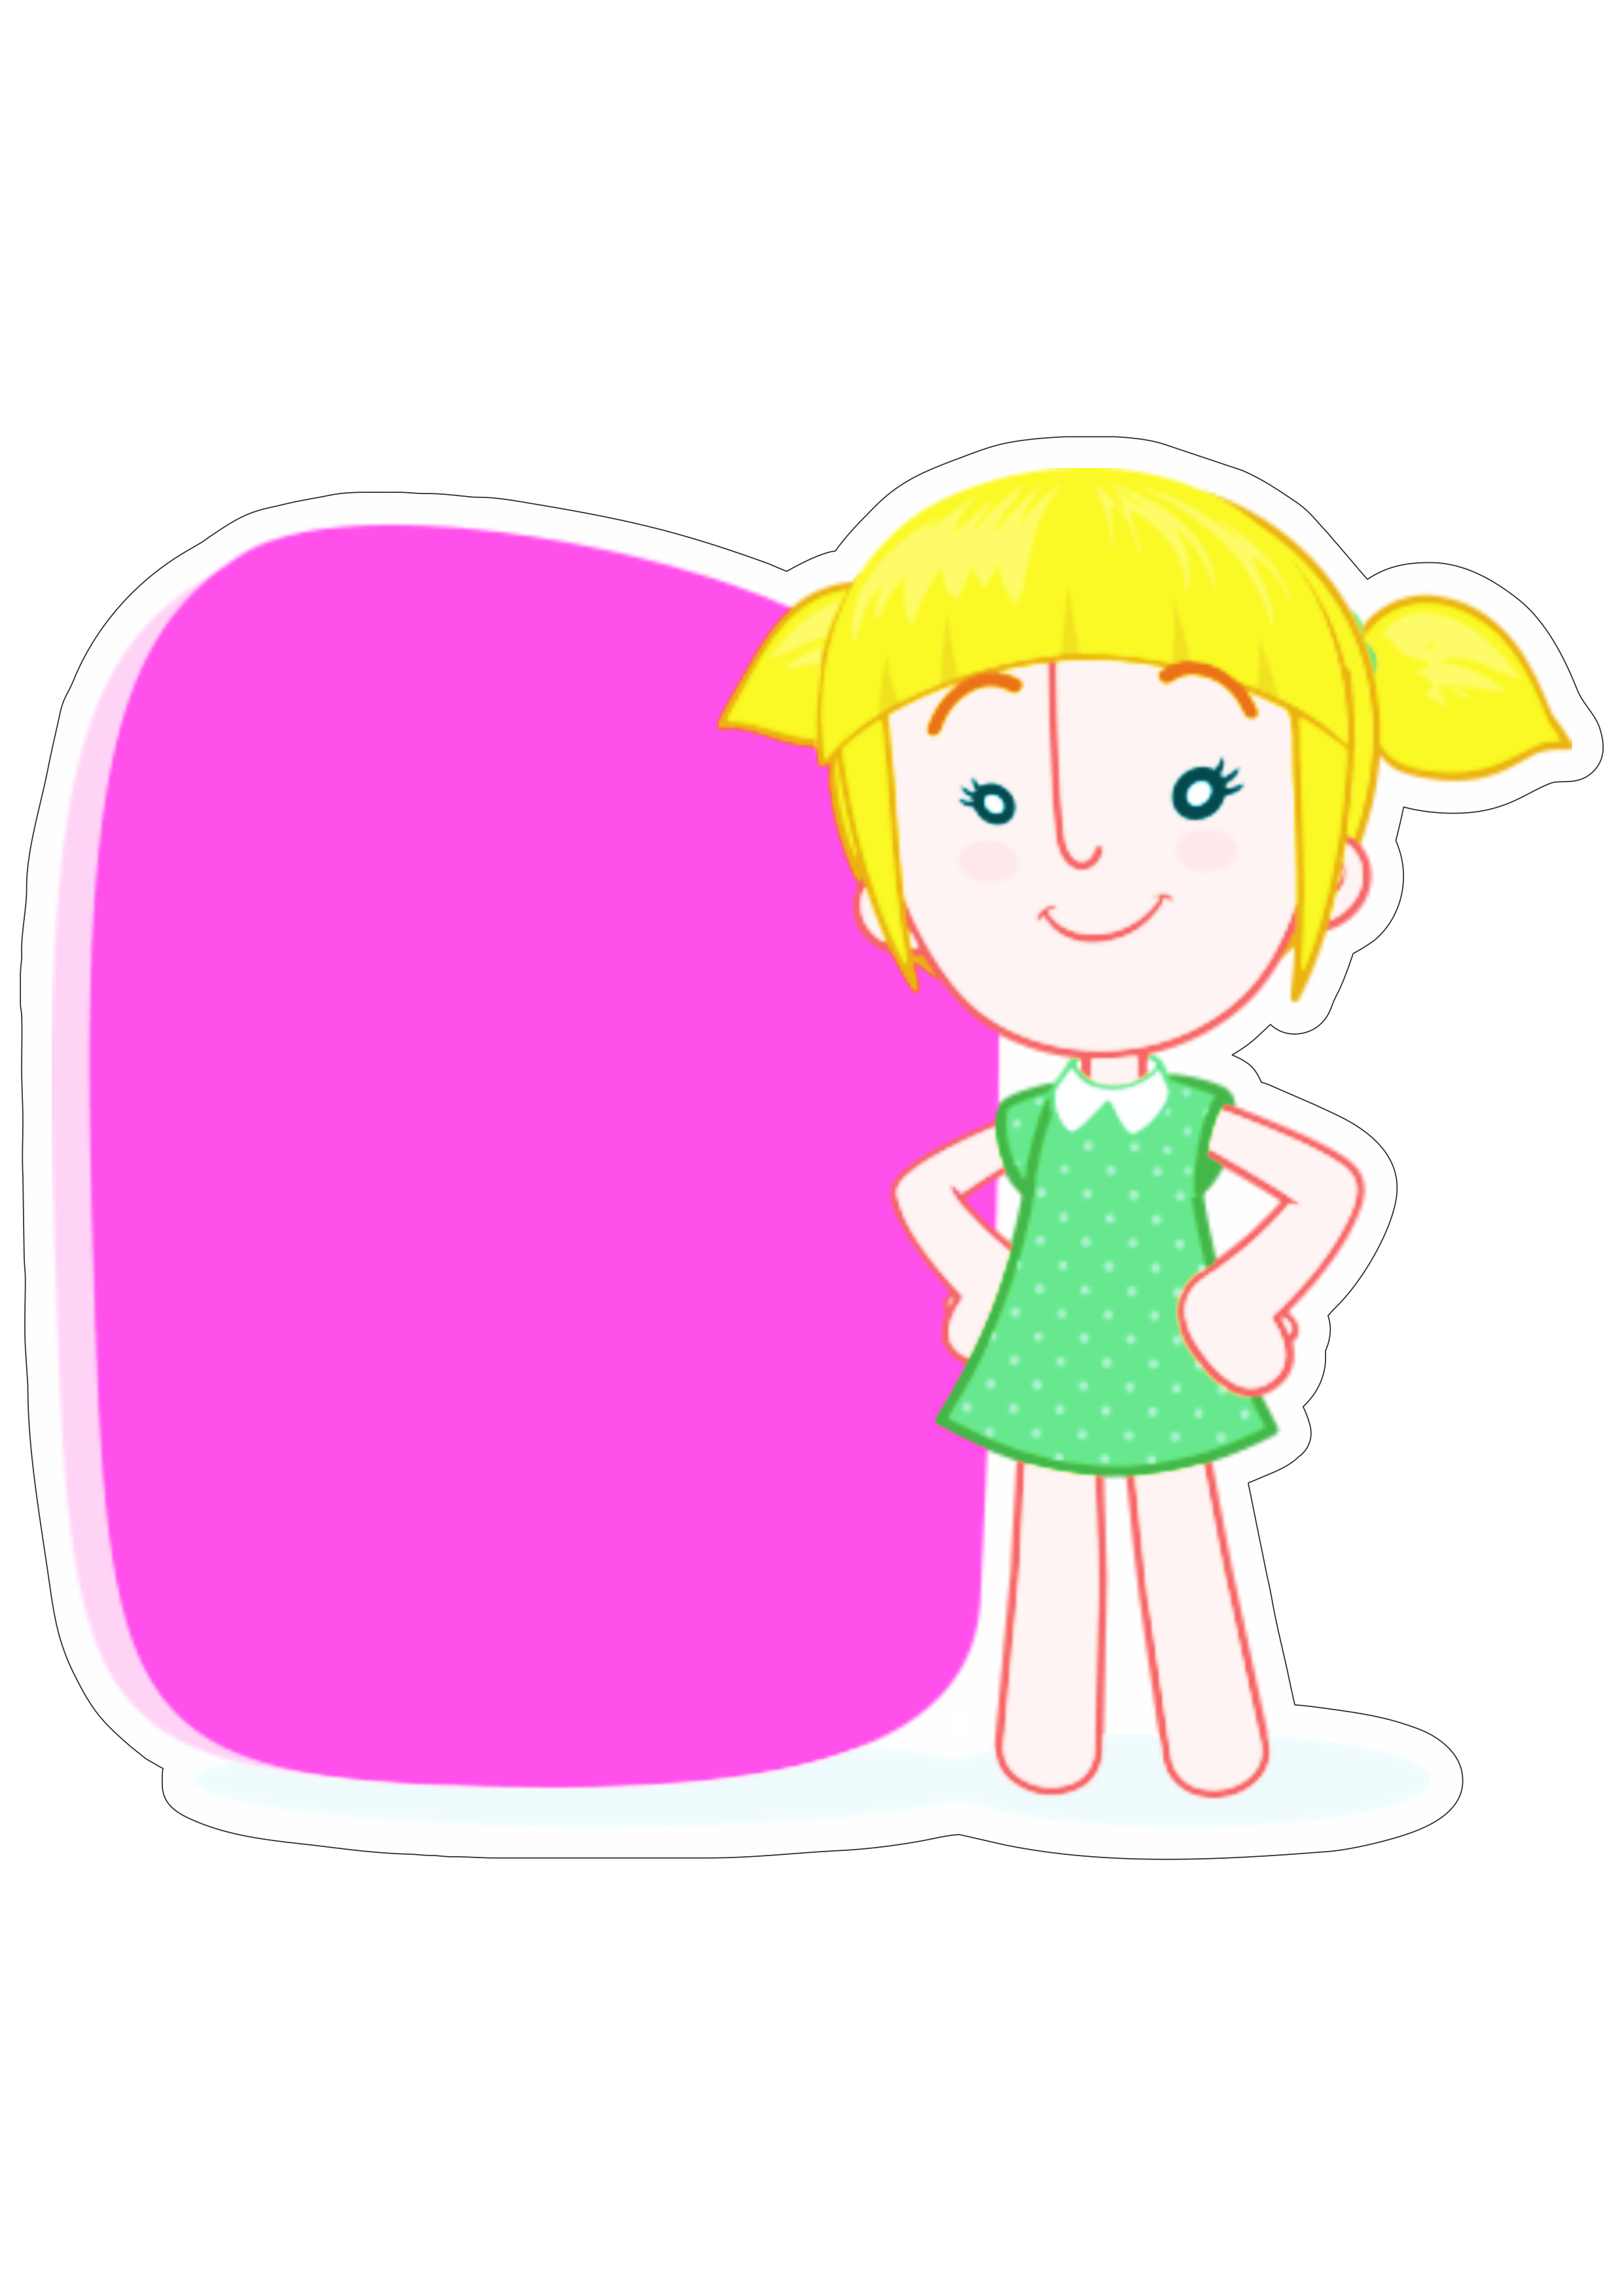 Mundo bita menina loirinha desenho infantil musical youtube logomarca editável fundo transparente png